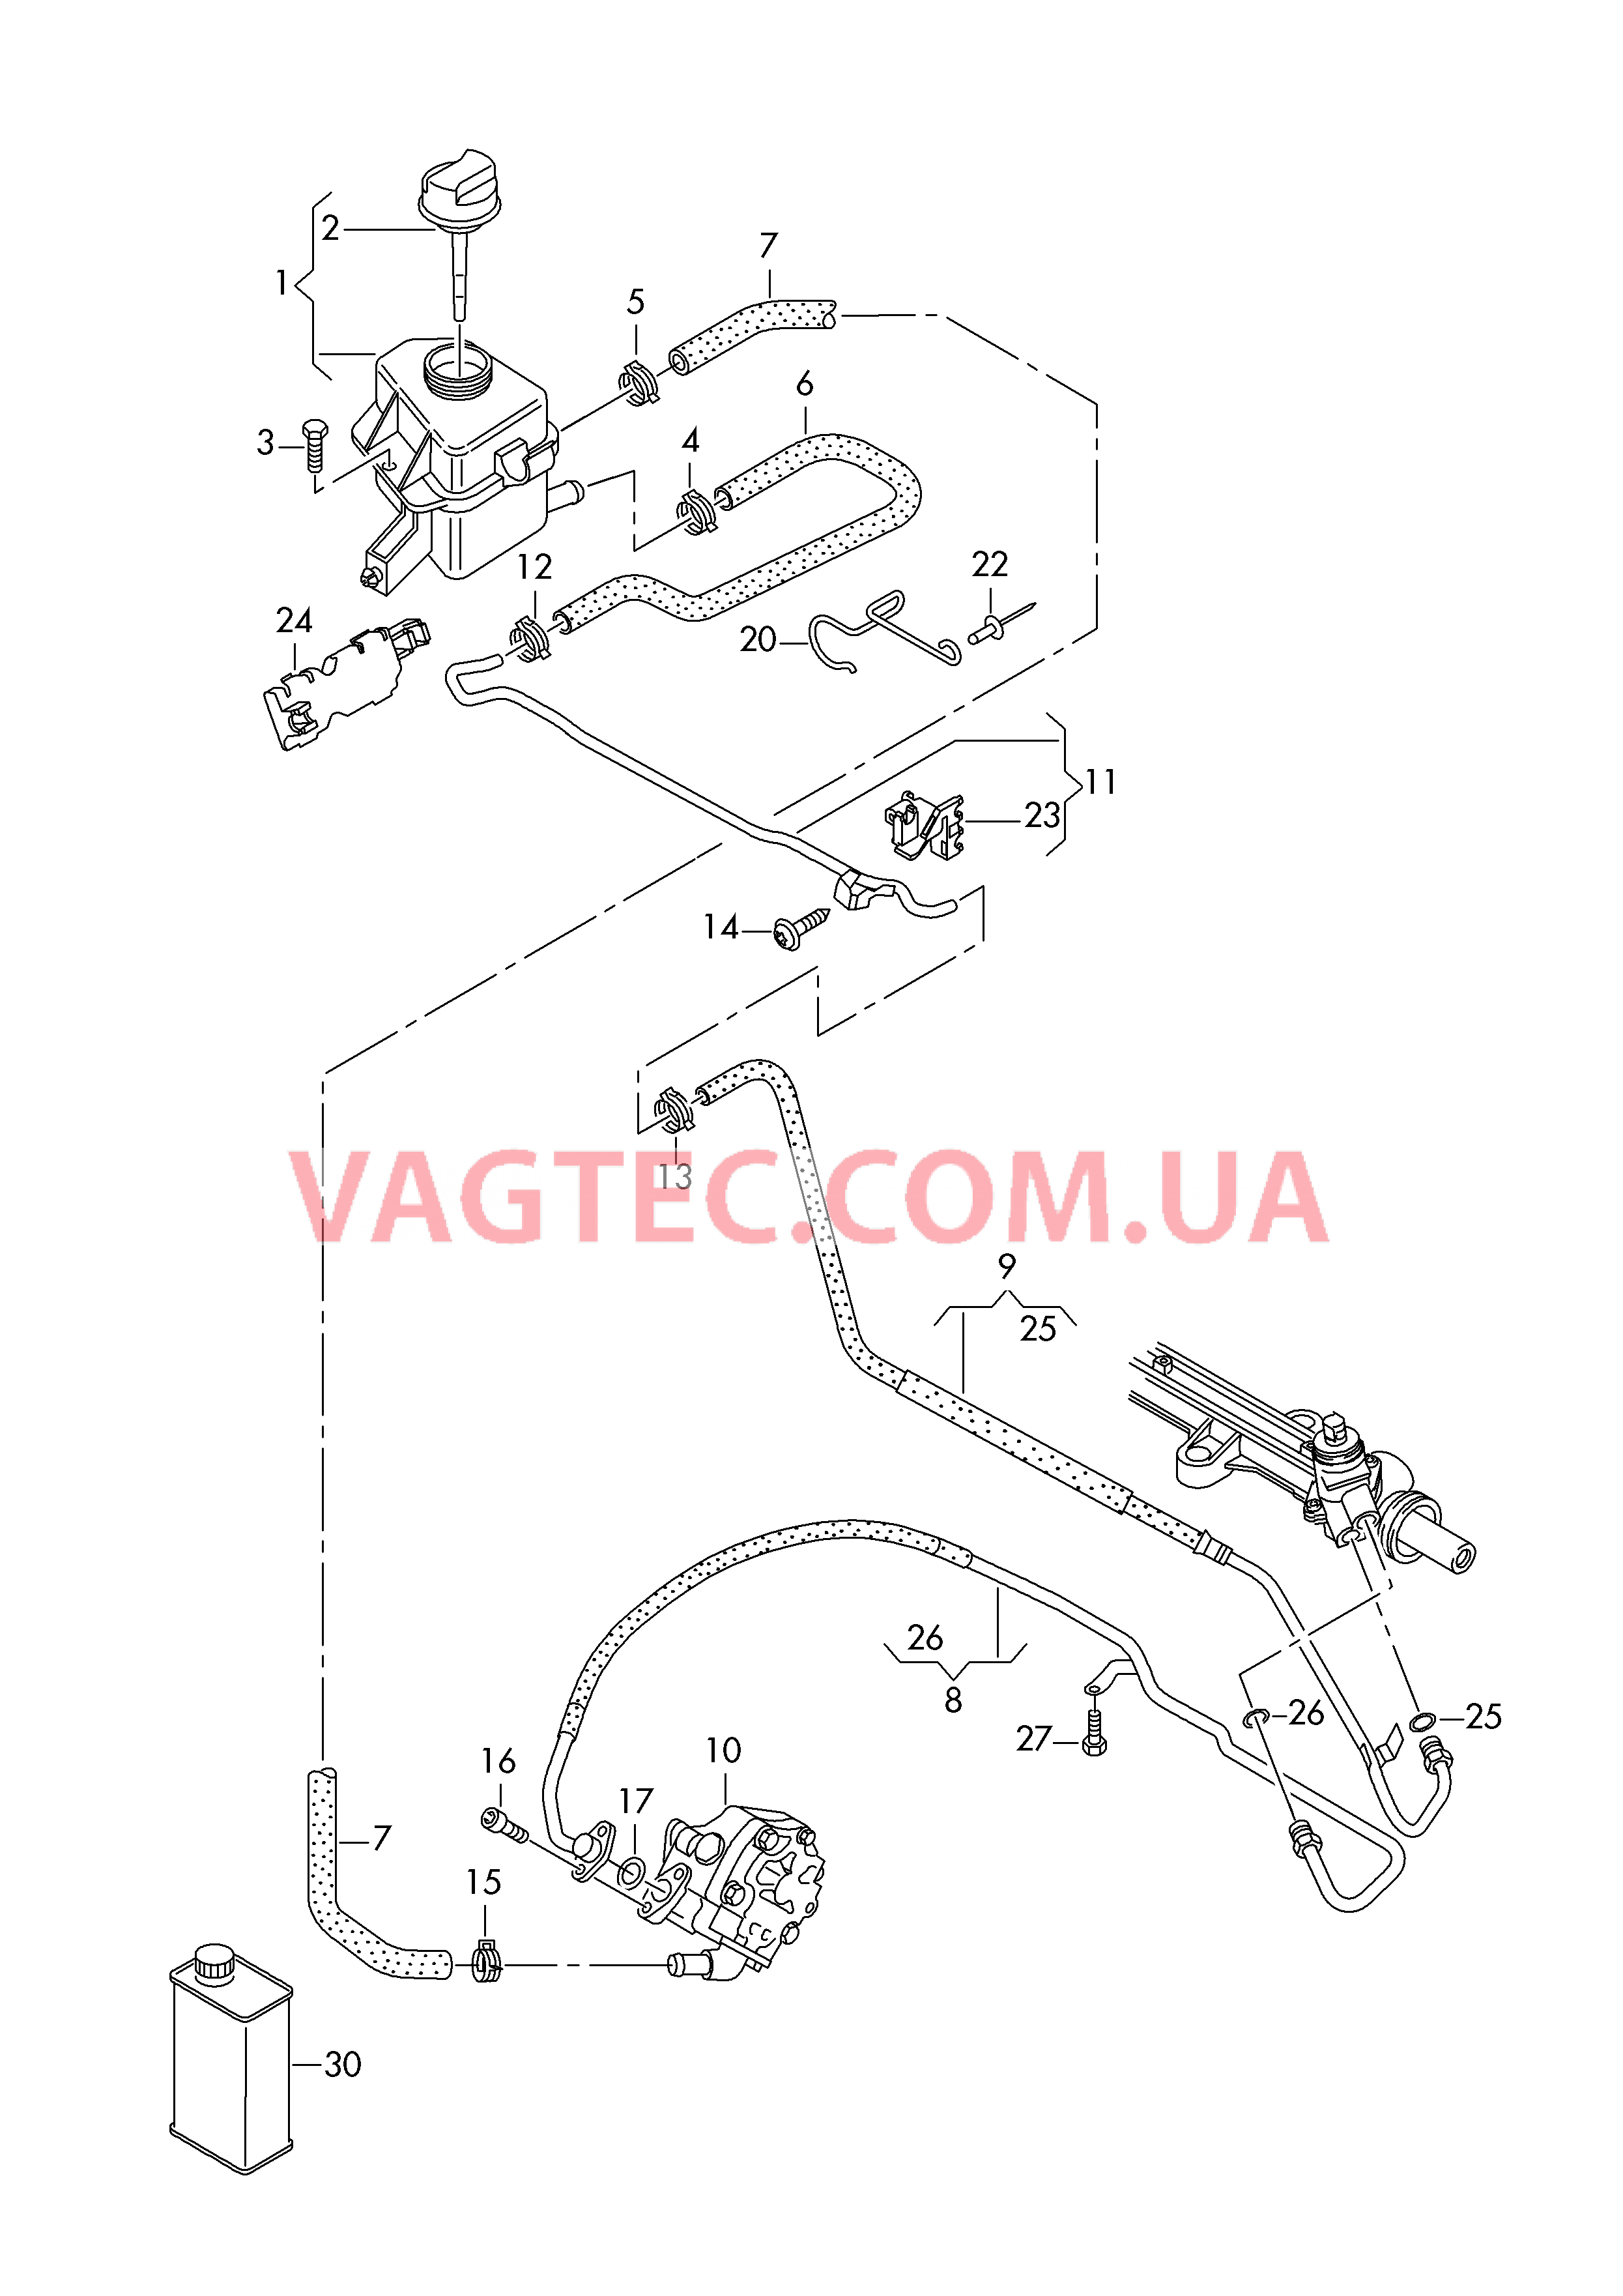 Масляный бачок с соединительными деталями, шлангами  для ГУPа  для VOLKSWAGEN Transporter 2018